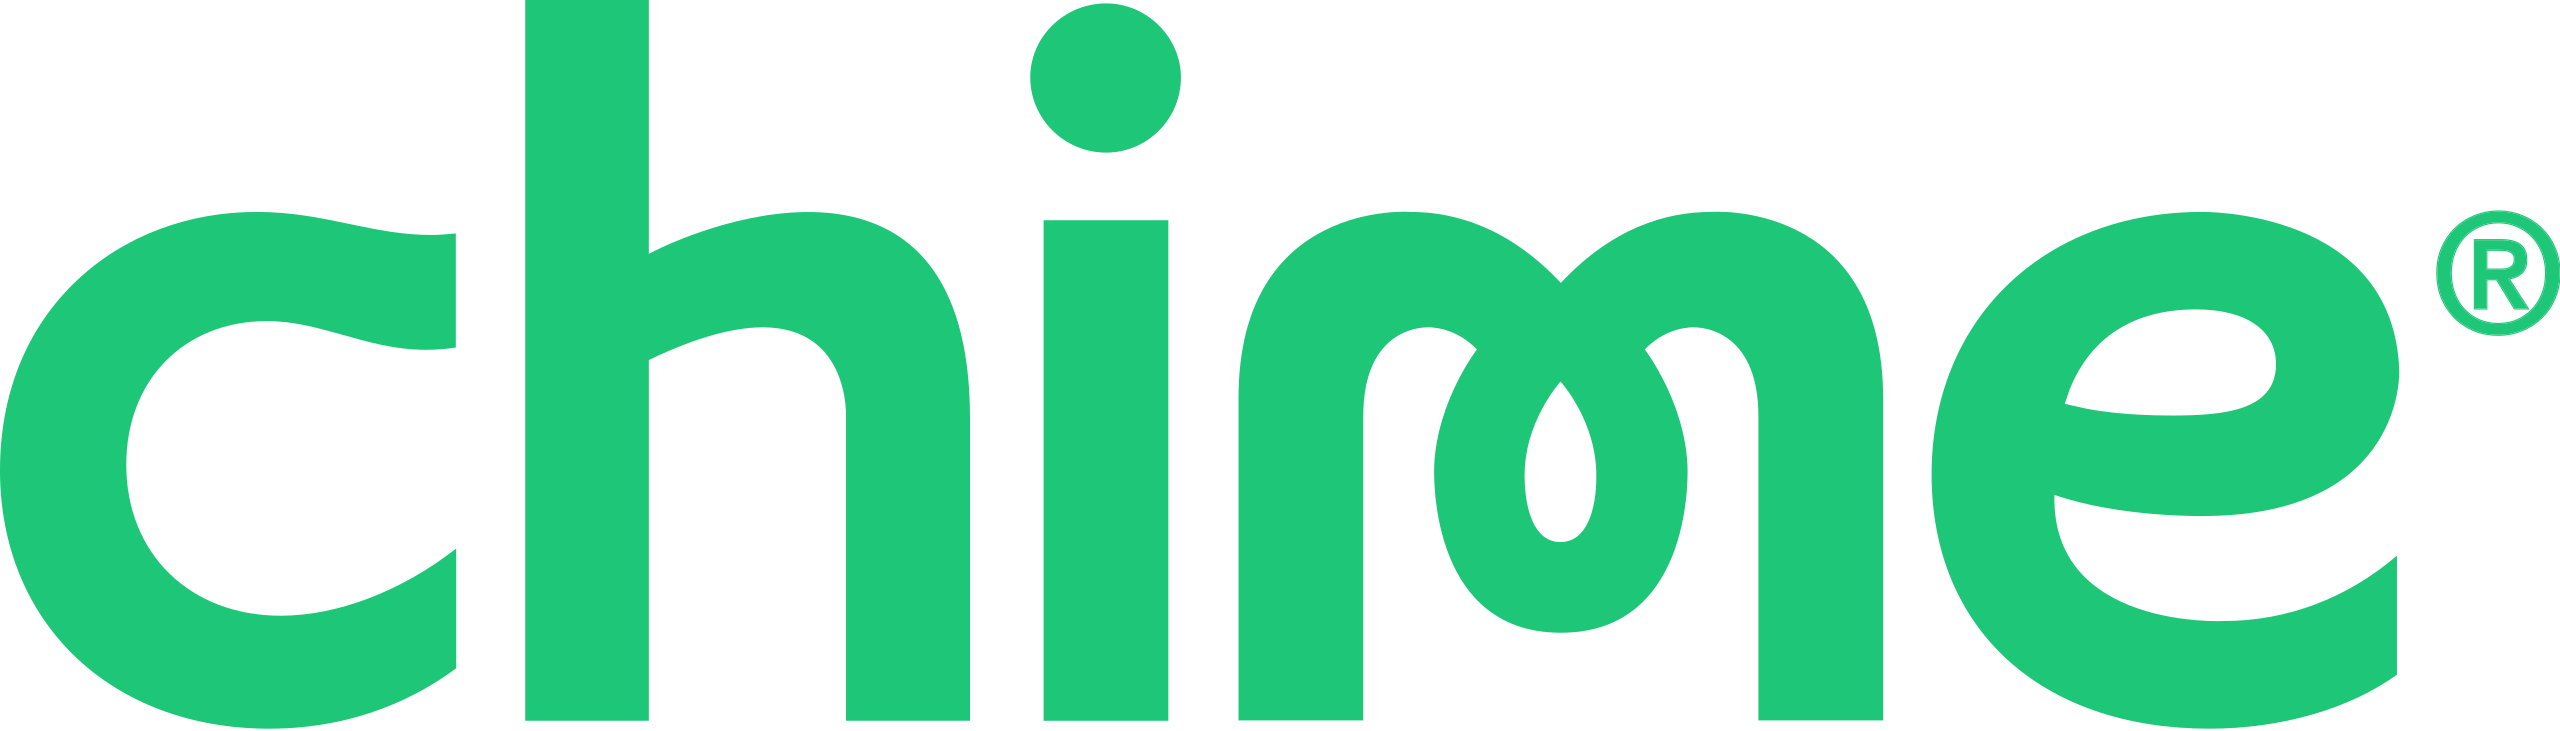 Chime_company_logo